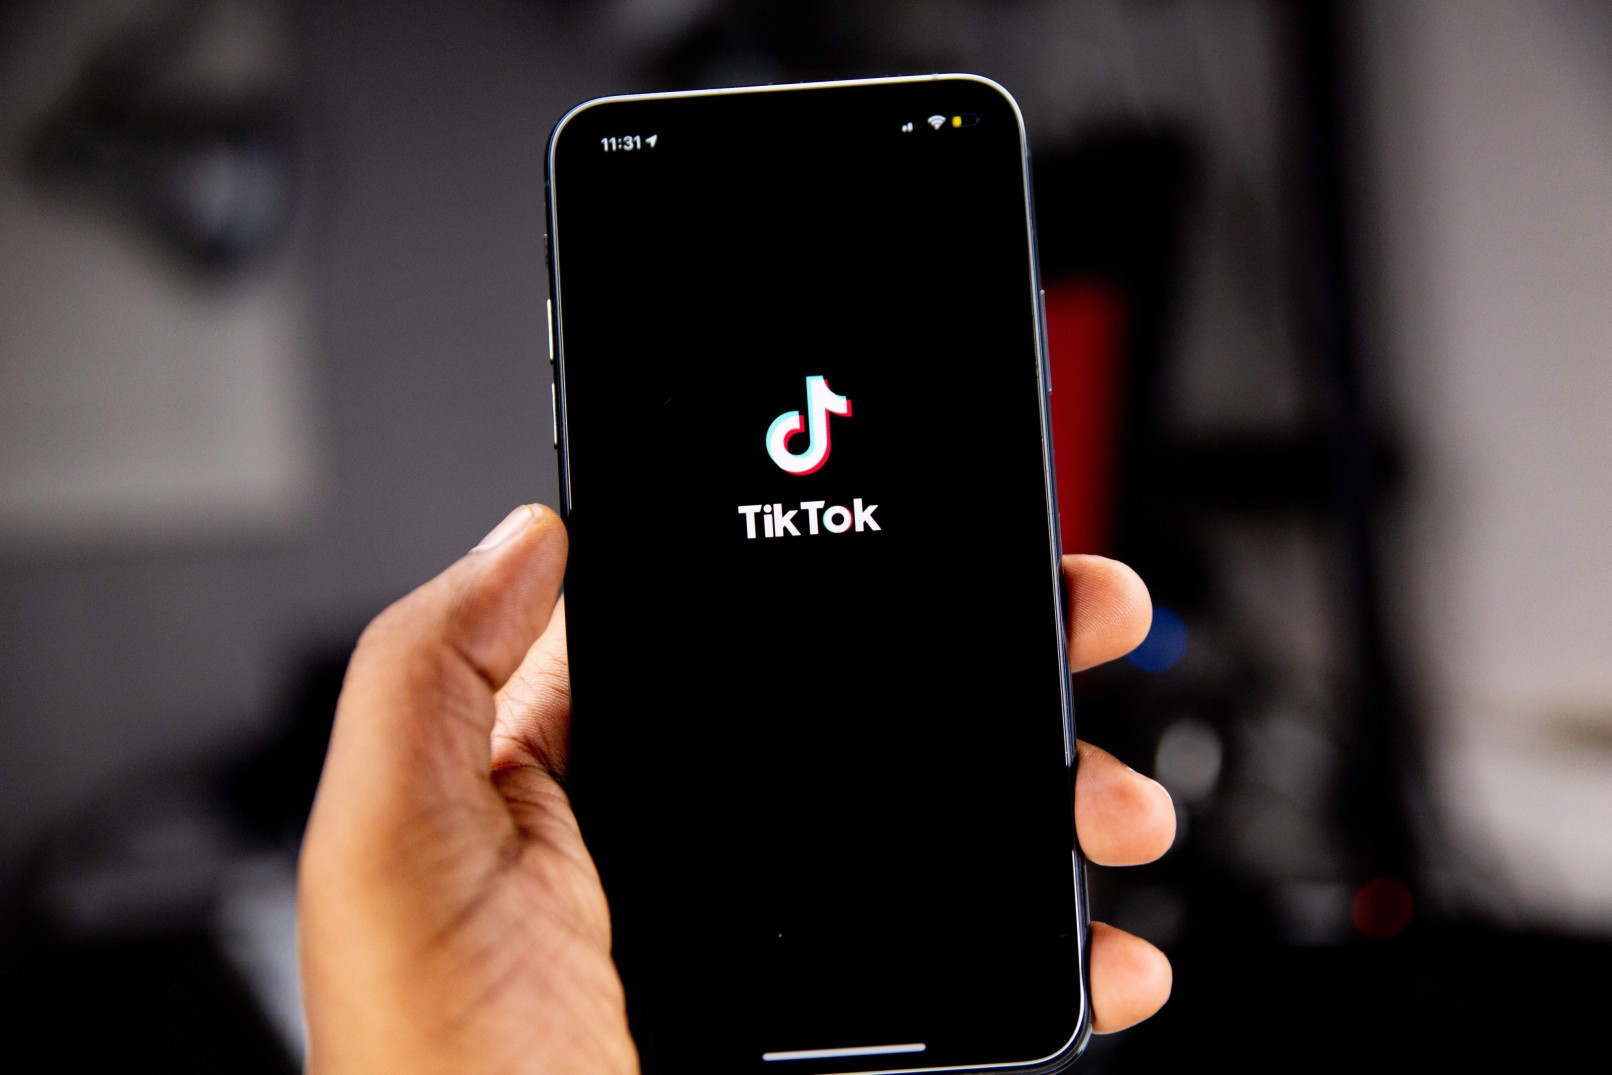 Una de las redes sociales más usadas es TikTok y se muestra su logotipo en esta imagen dentro de un smartphone sostenido por una persona